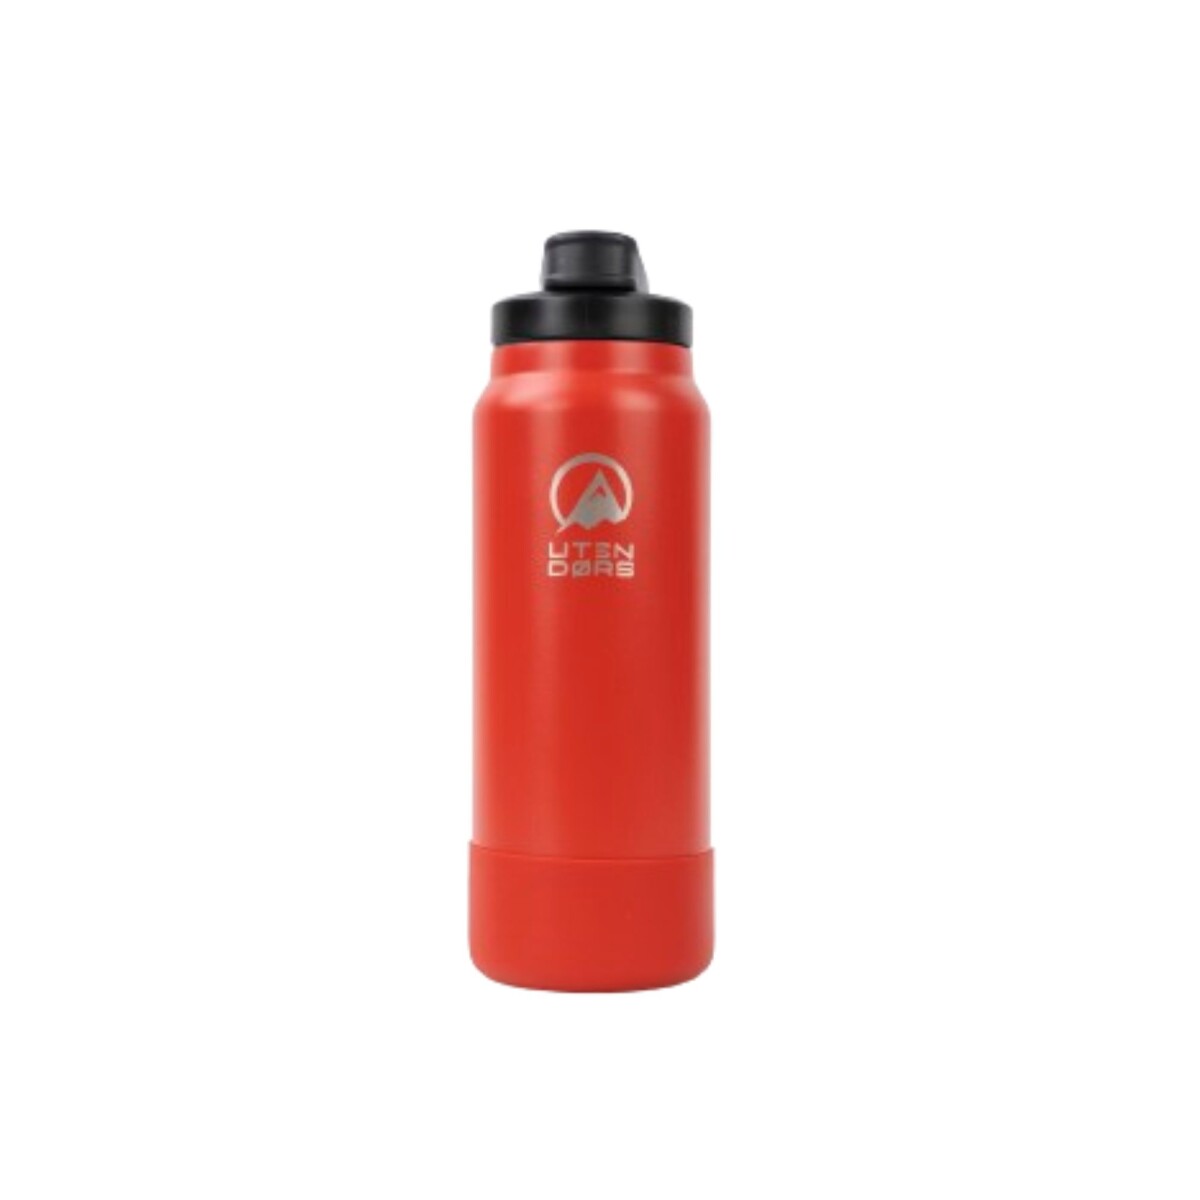 Botellon Utendors 950ml con bota de silicona - Rojo 